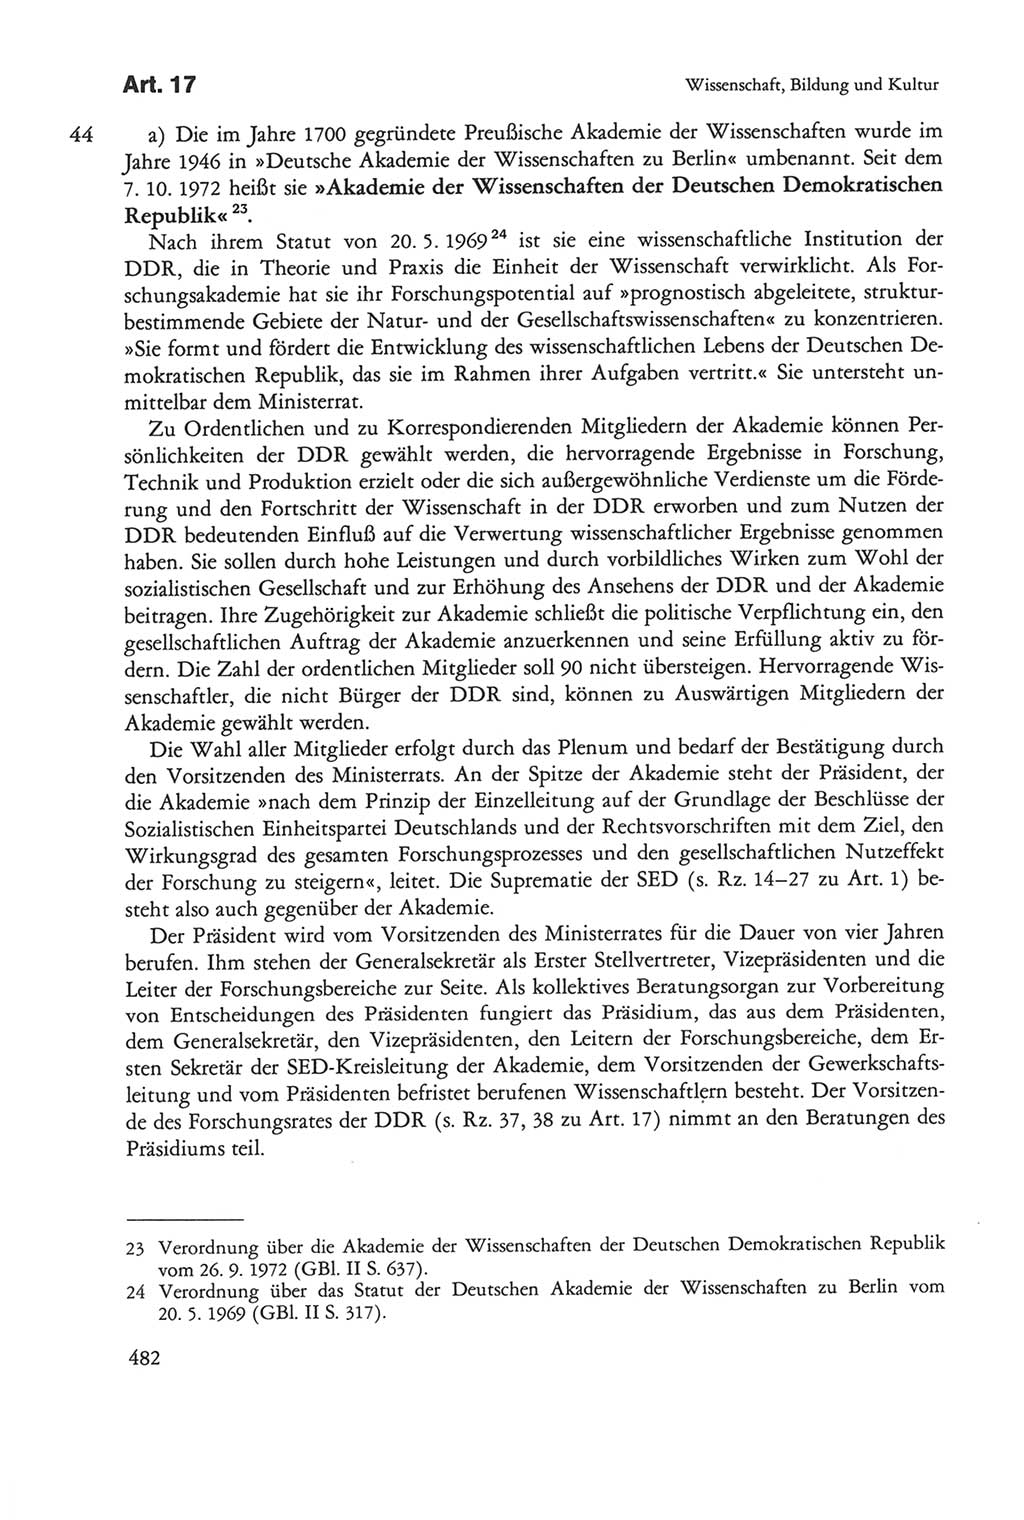 Die sozialistische Verfassung der Deutschen Demokratischen Republik (DDR), Kommentar mit einem Nachtrag 1997, Seite 482 (Soz. Verf. DDR Komm. Nachtr. 1997, S. 482)